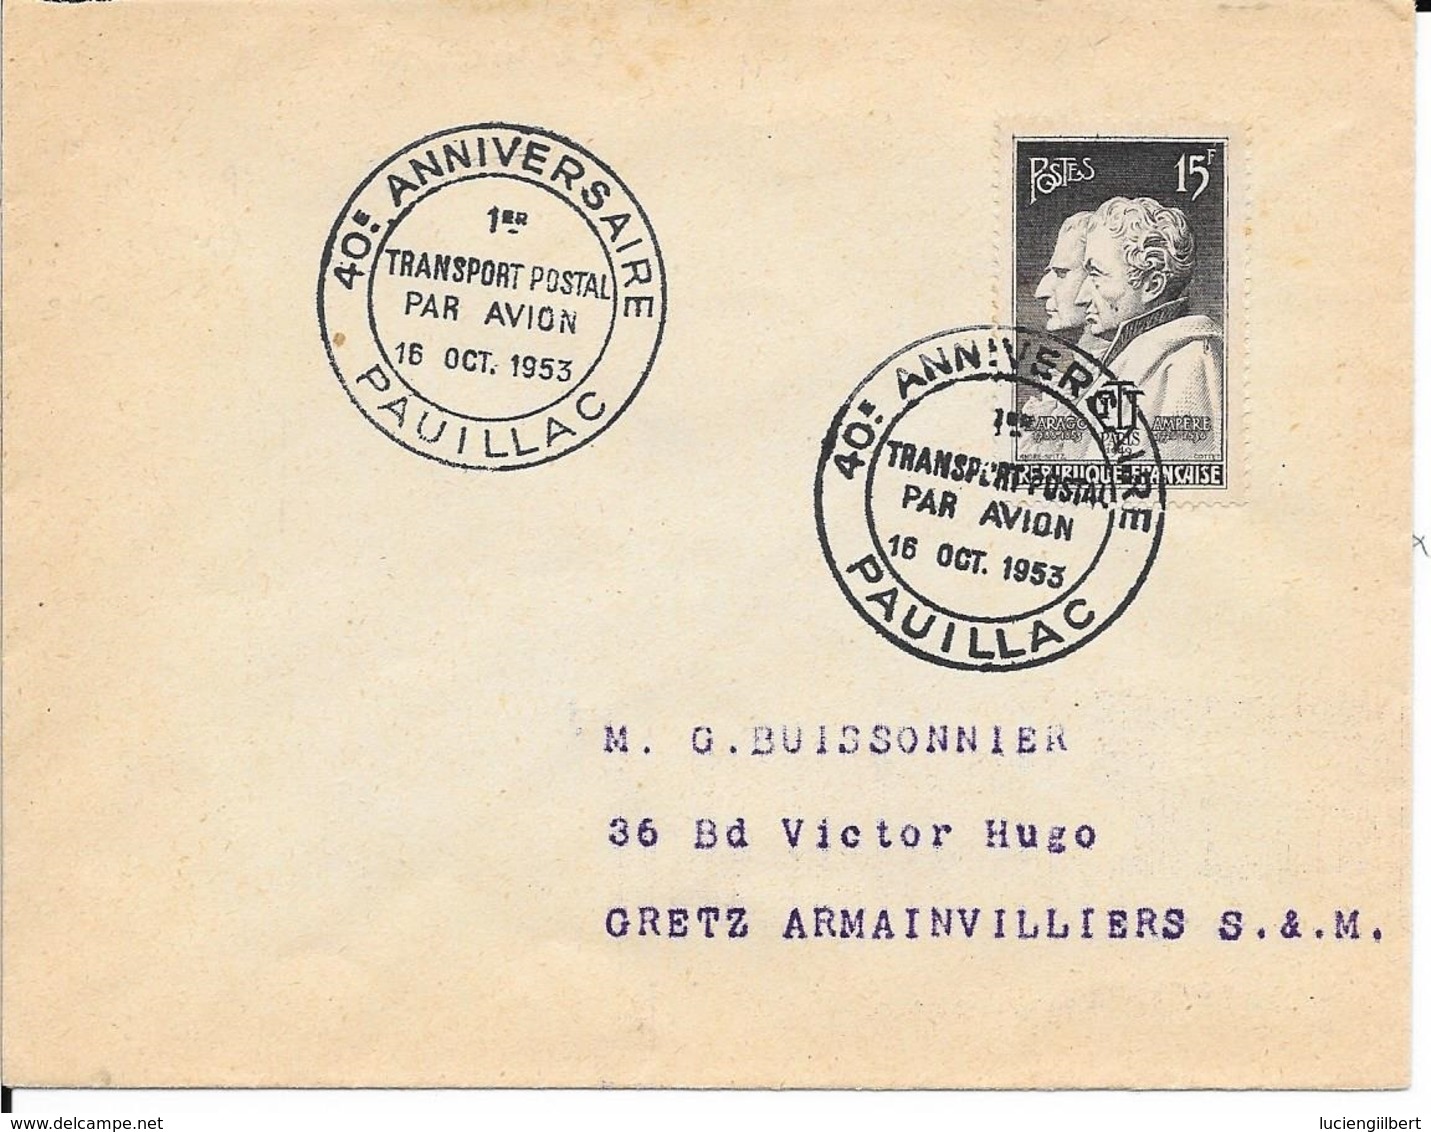 GIRONDE 33 -  PAUILLAC   -  CACHET N° 1163  DESCRIPTION  - 1953  - TIMBRES N° 845  - TARIF 6 1 49 - SEUL SUR LETTRE - - Commemorative Postmarks